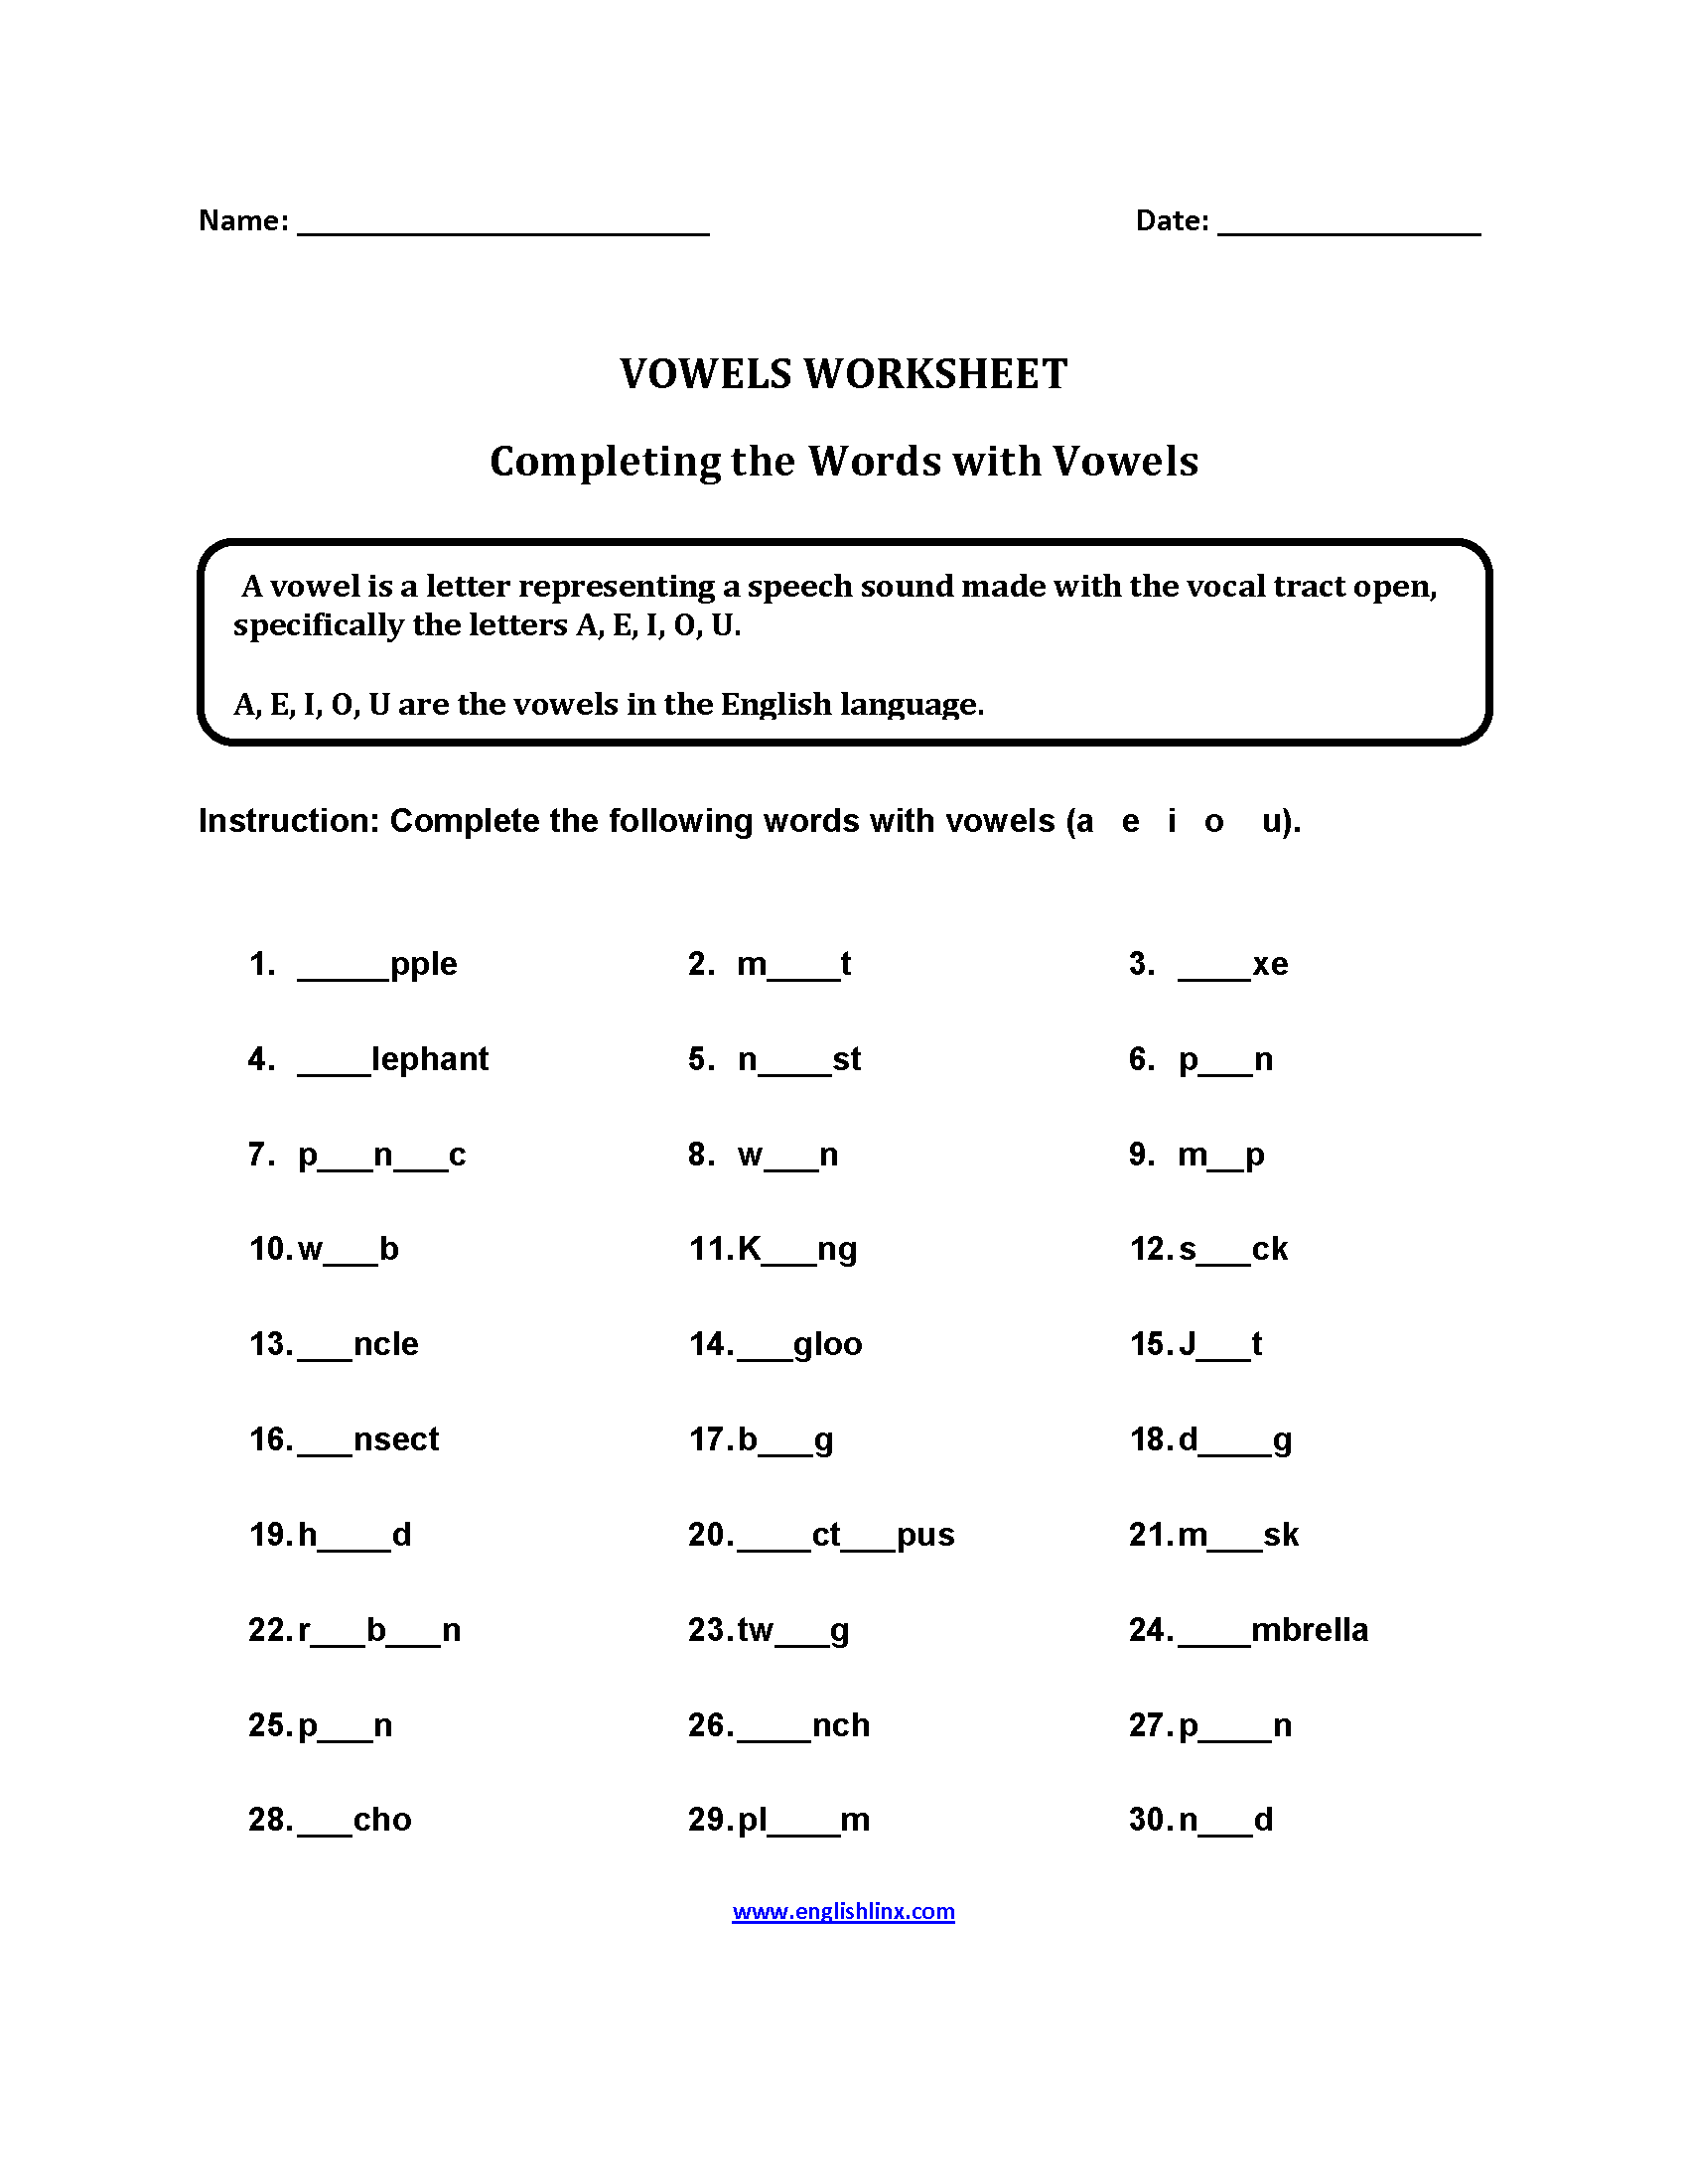 Completing Words Vowels Worksheets Part 2